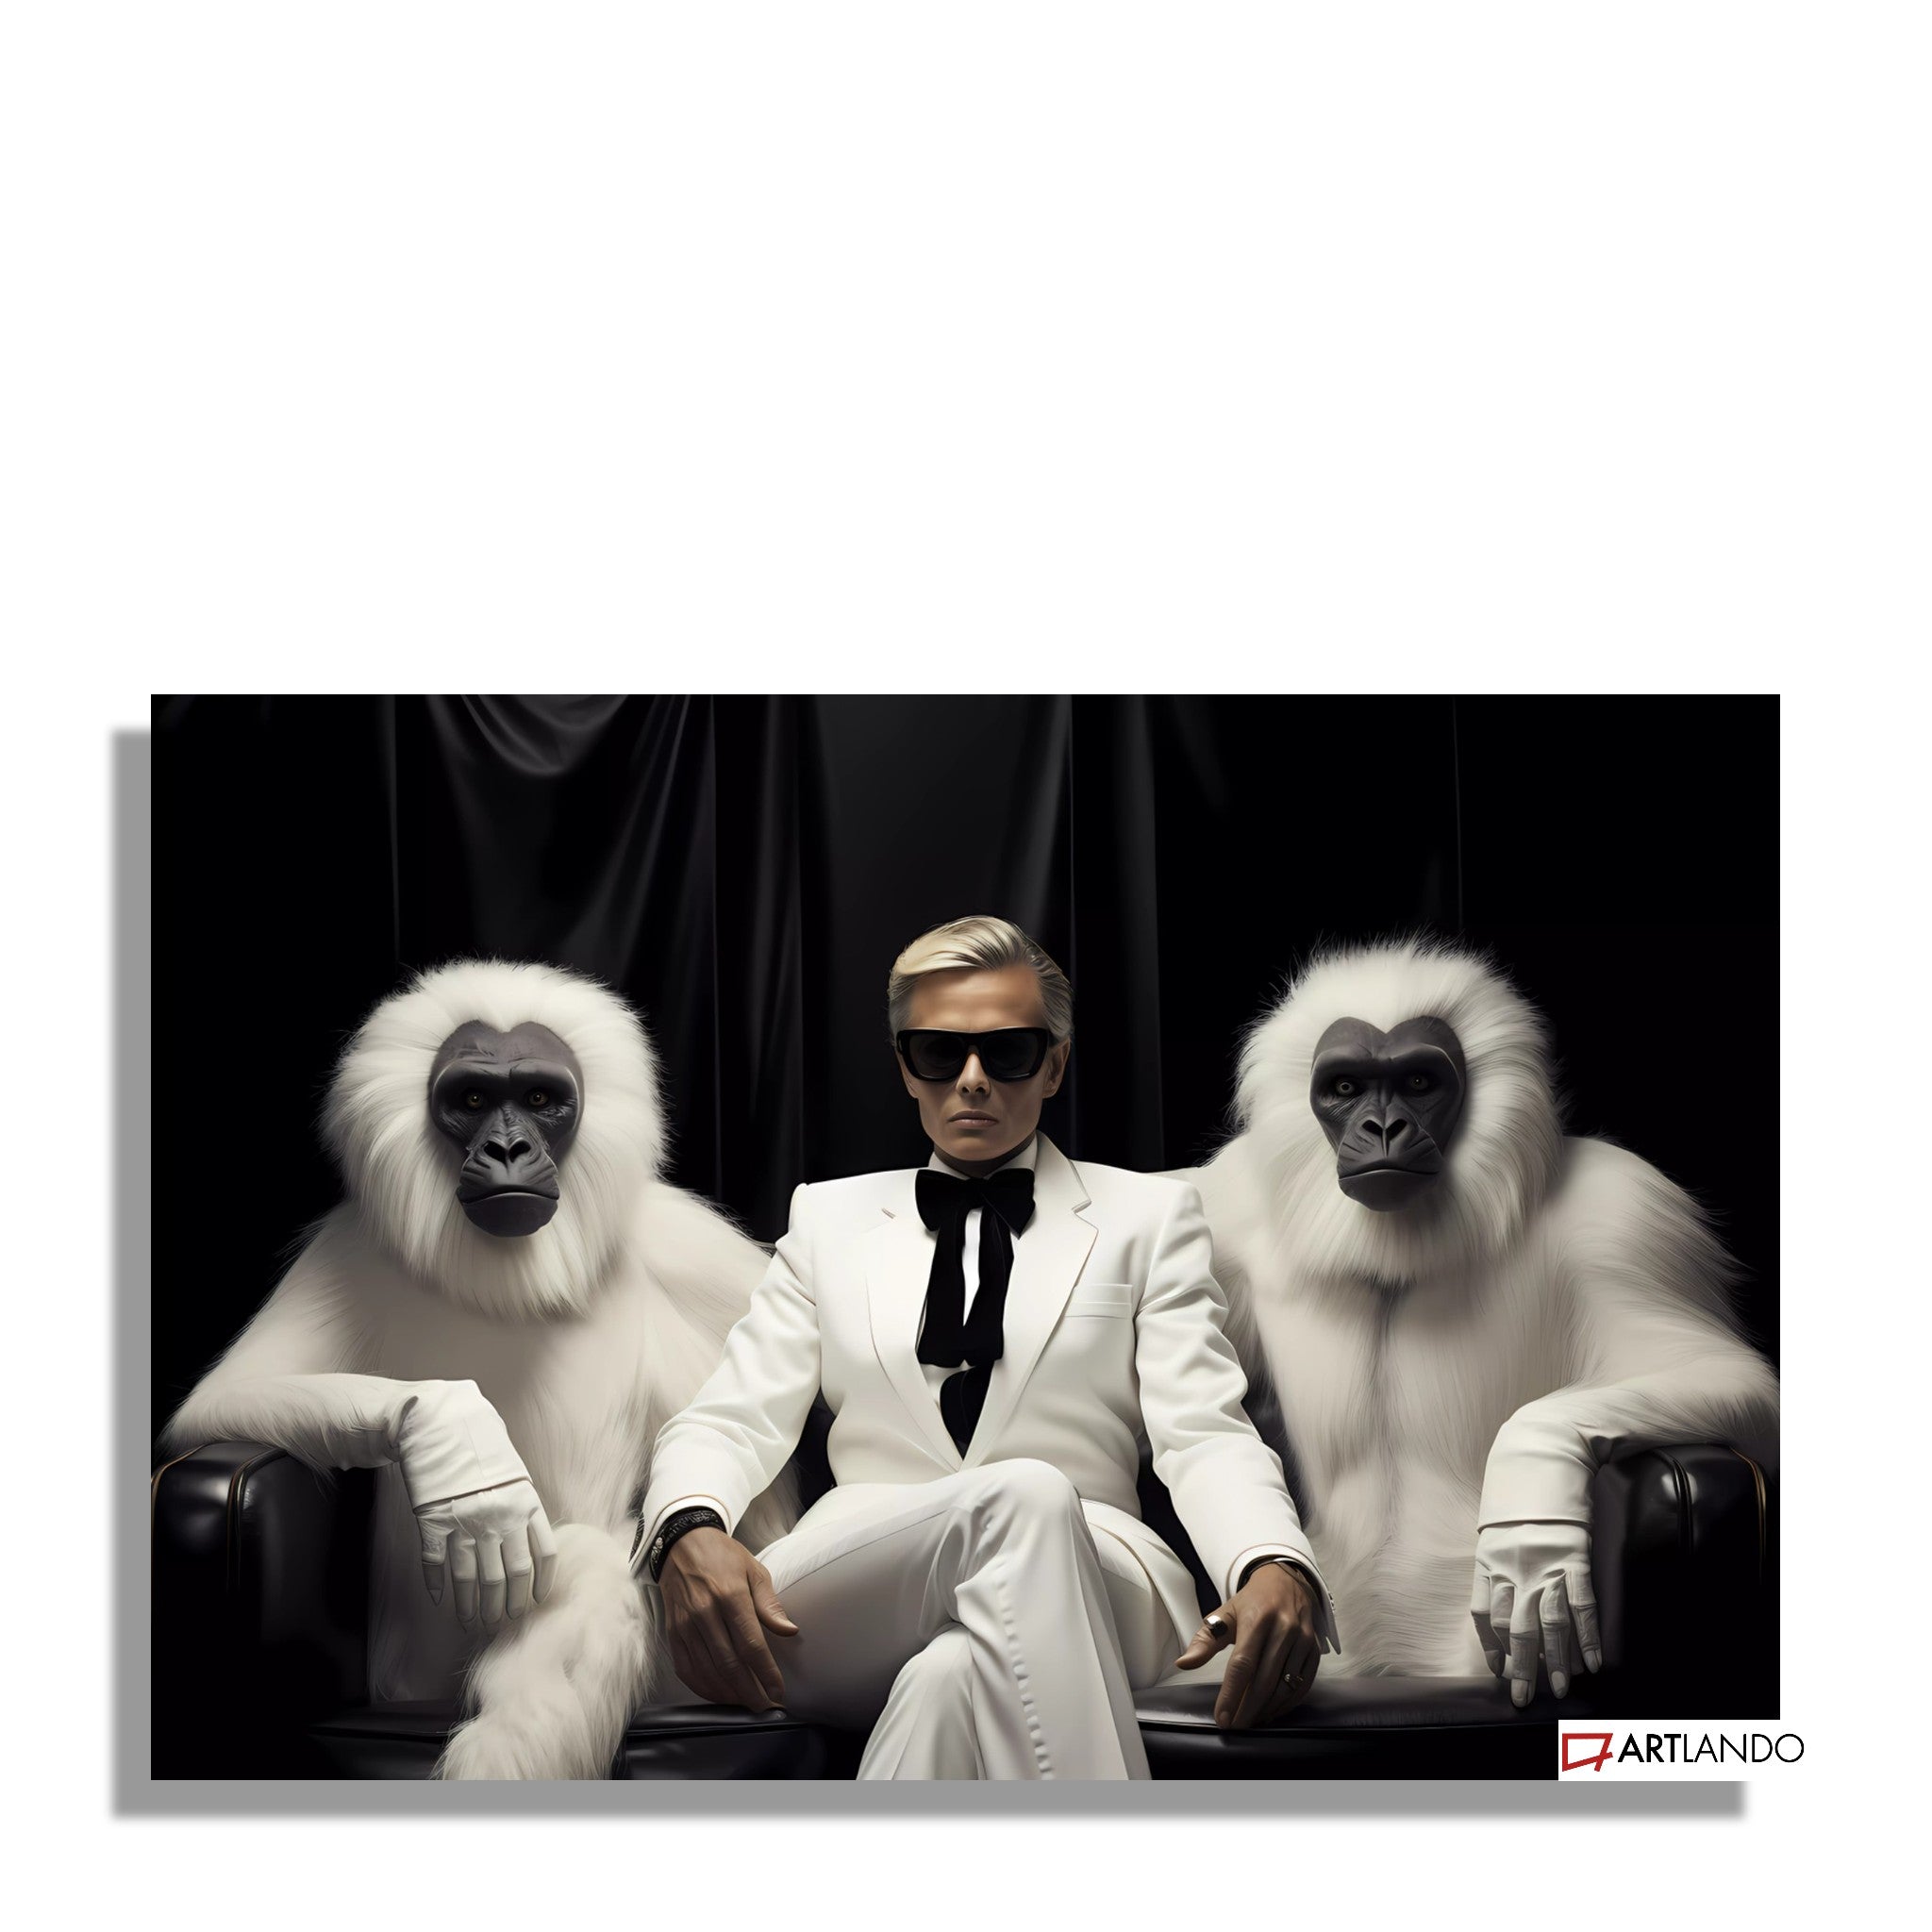 Mann in weißem Anzug mit zwei Affen auf Sofa